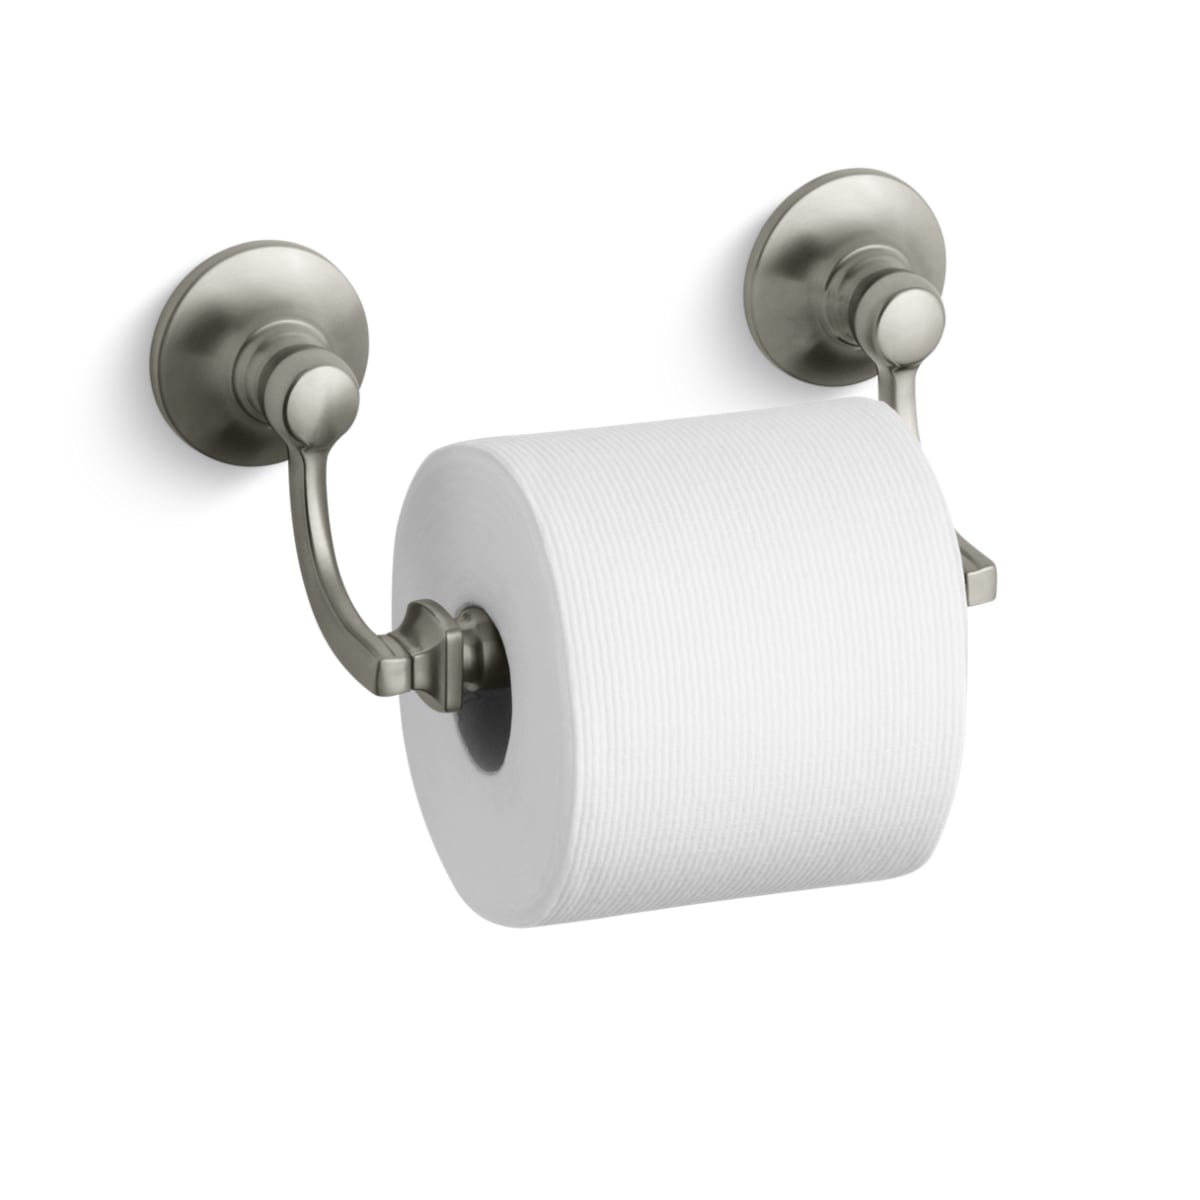 Kohler K-11415-BN Bancroft Double Post Toilet Paper Holder